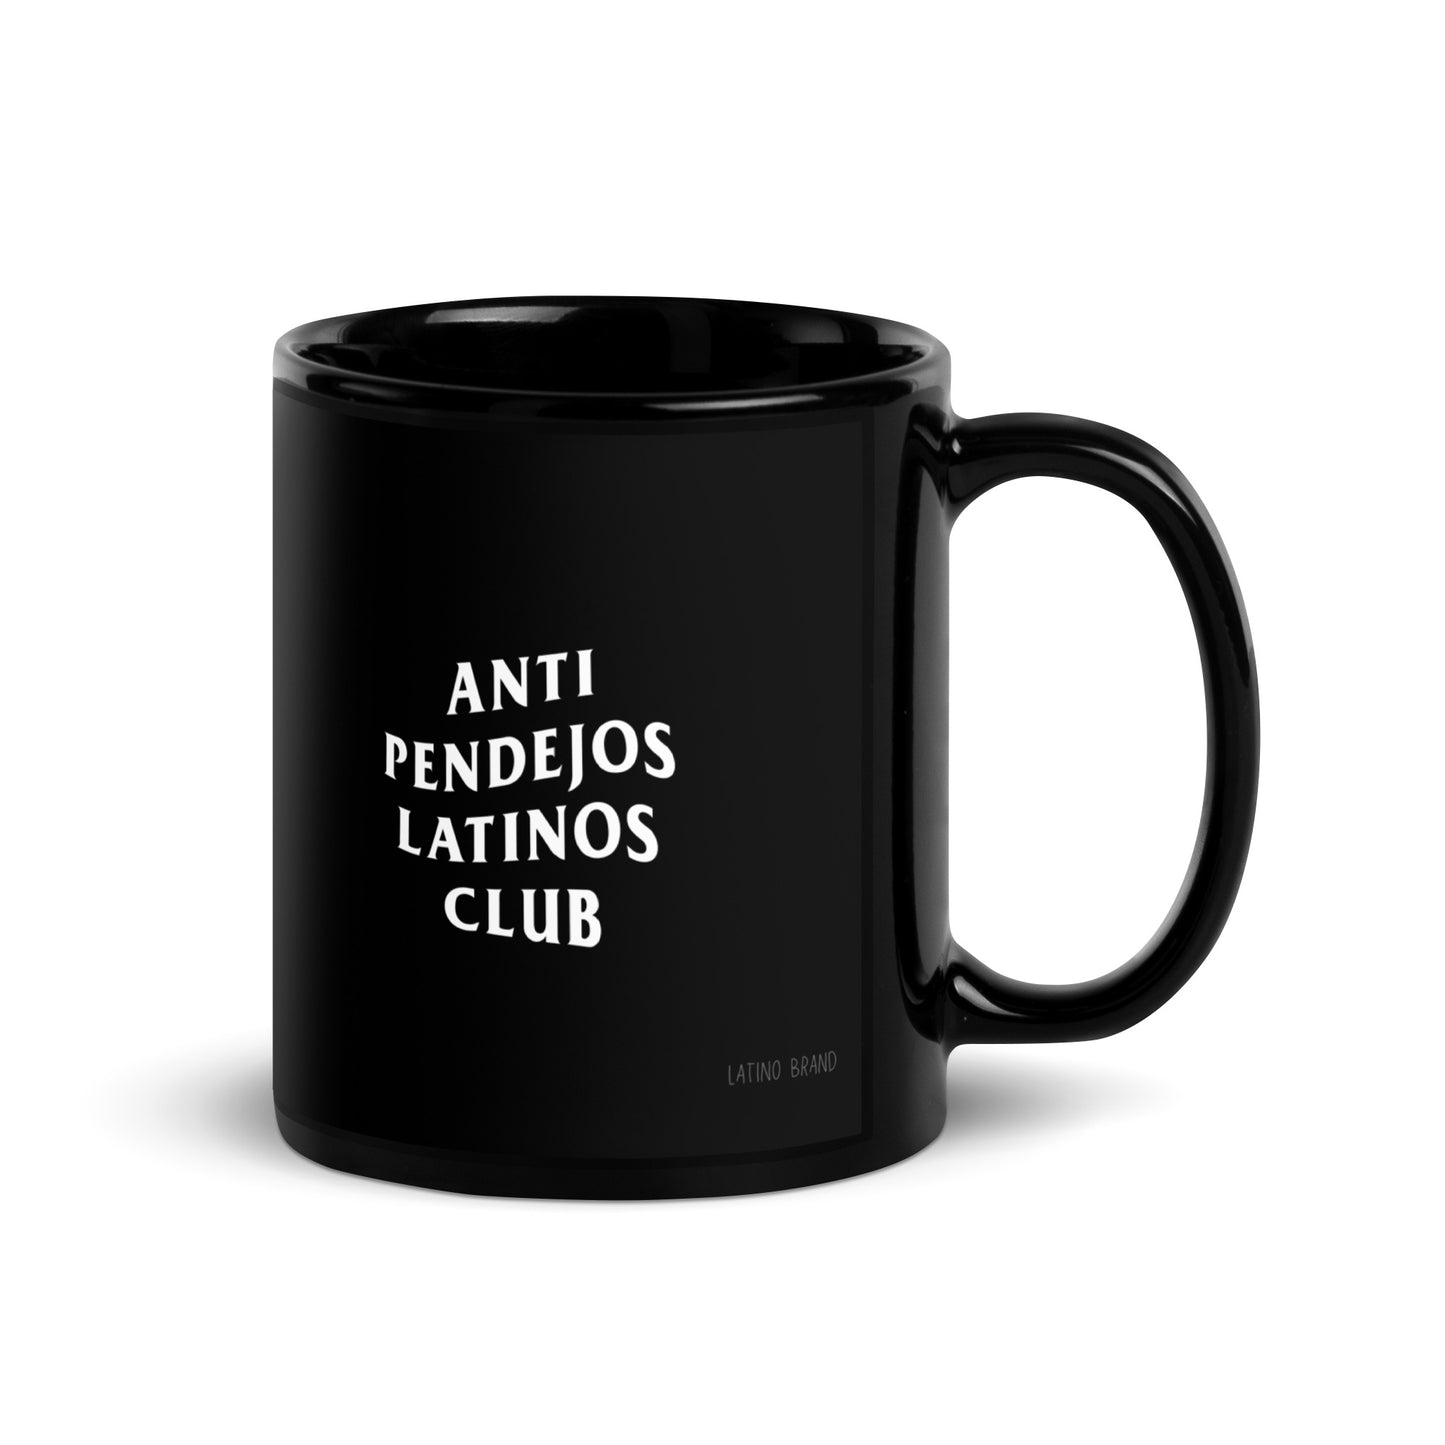 Anti Pendejos Coffee Mug